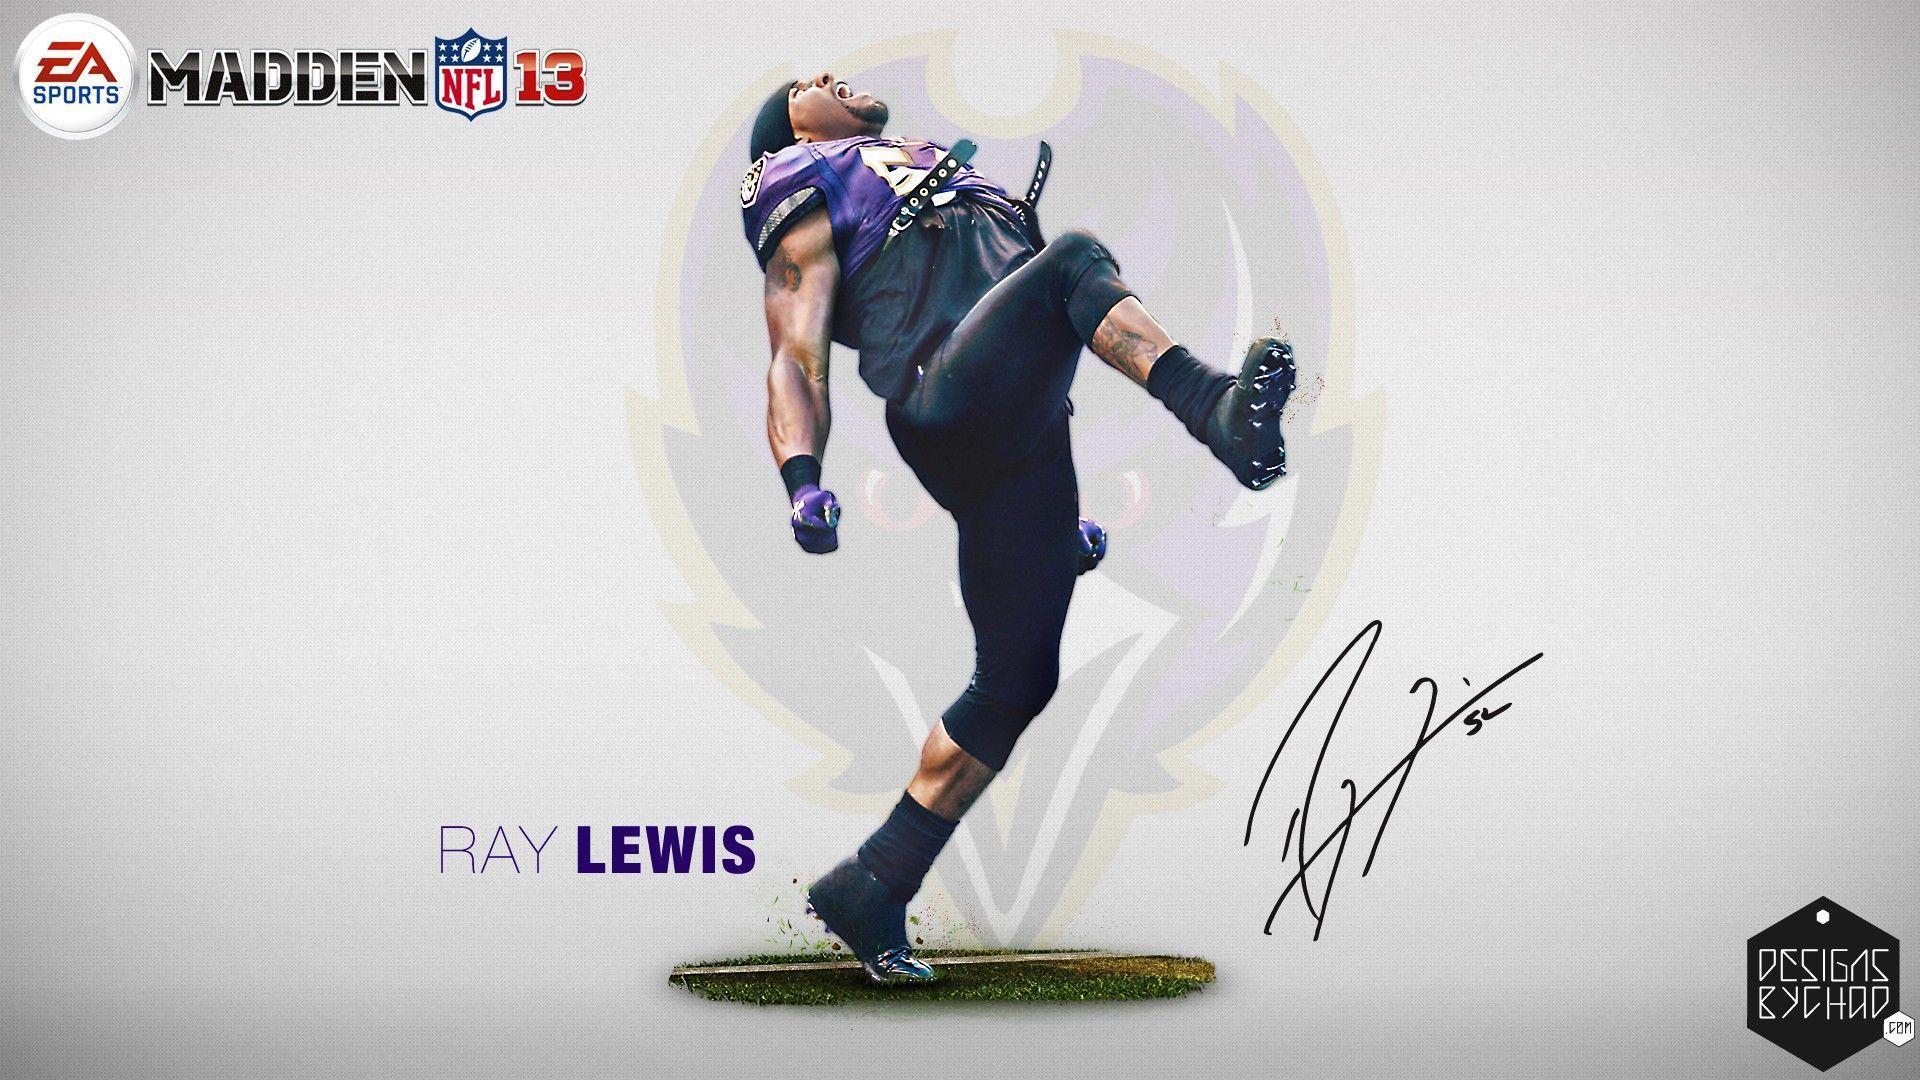 Ray Lewis 2013 Baltimore Ravens HD Wallpaper. edy